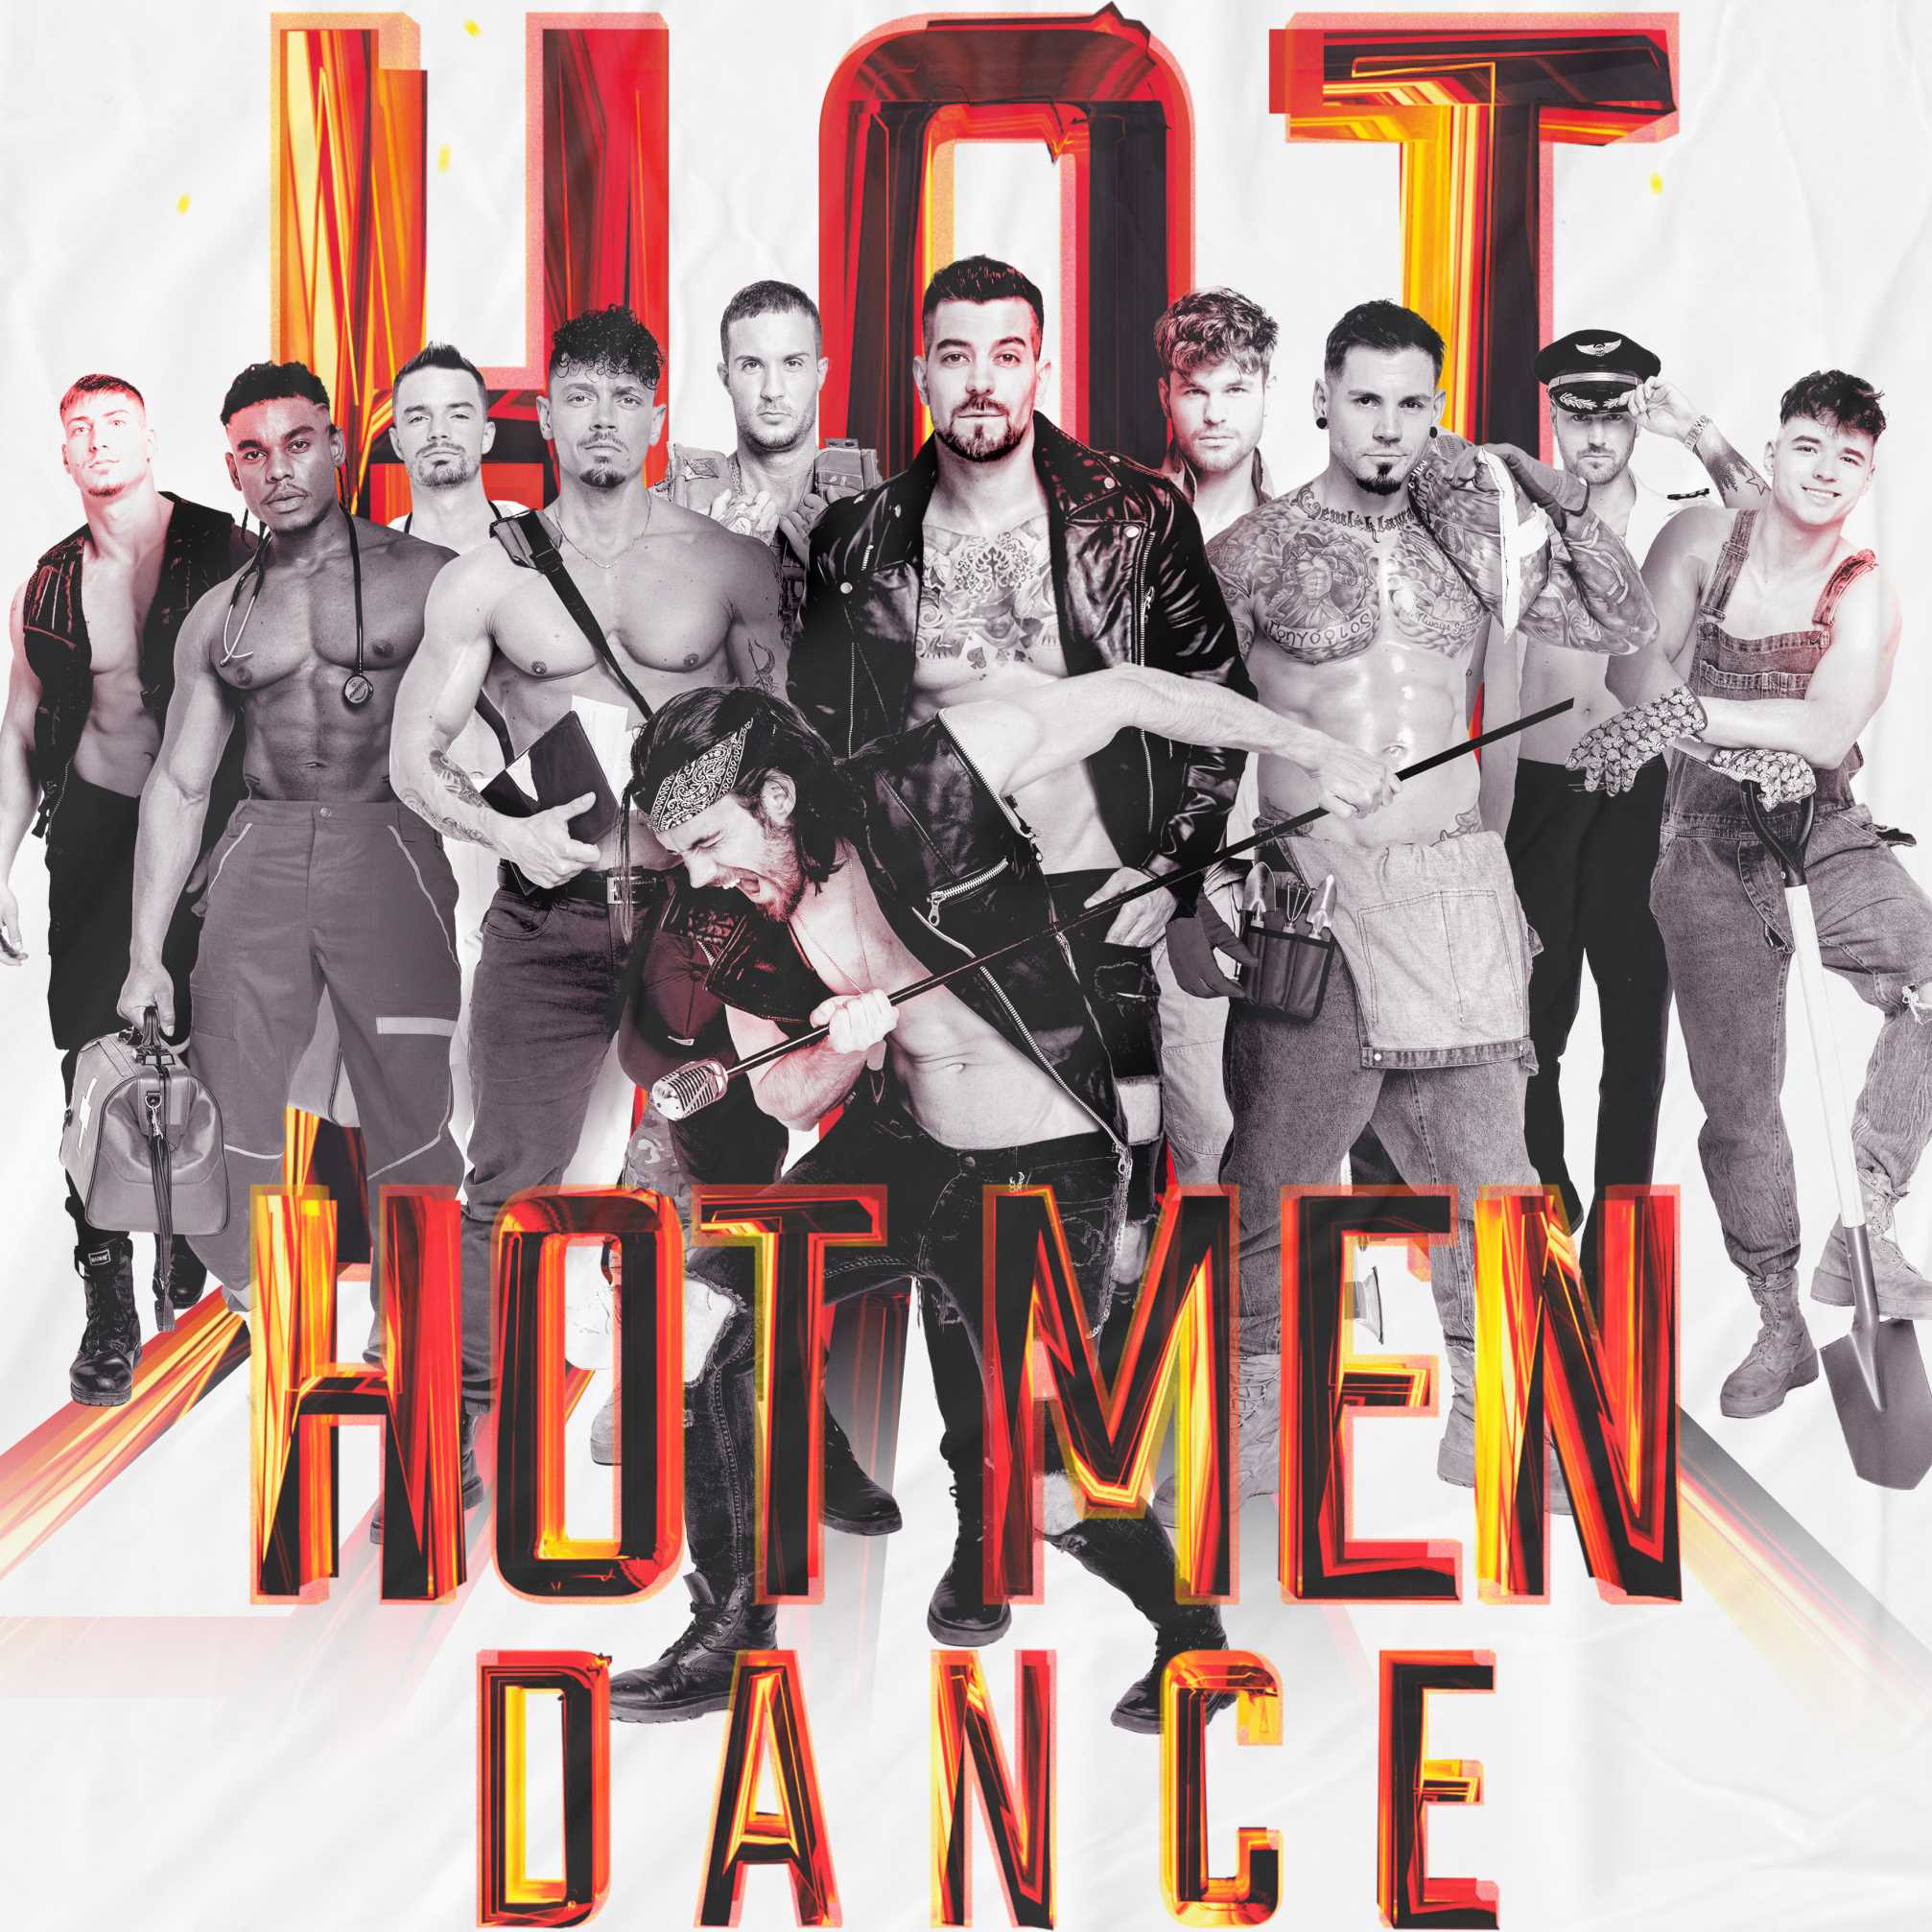 Hot Men Dance: plesna senzacija koja je zaludila žene diljem svijeta konačno u Zagrebu!